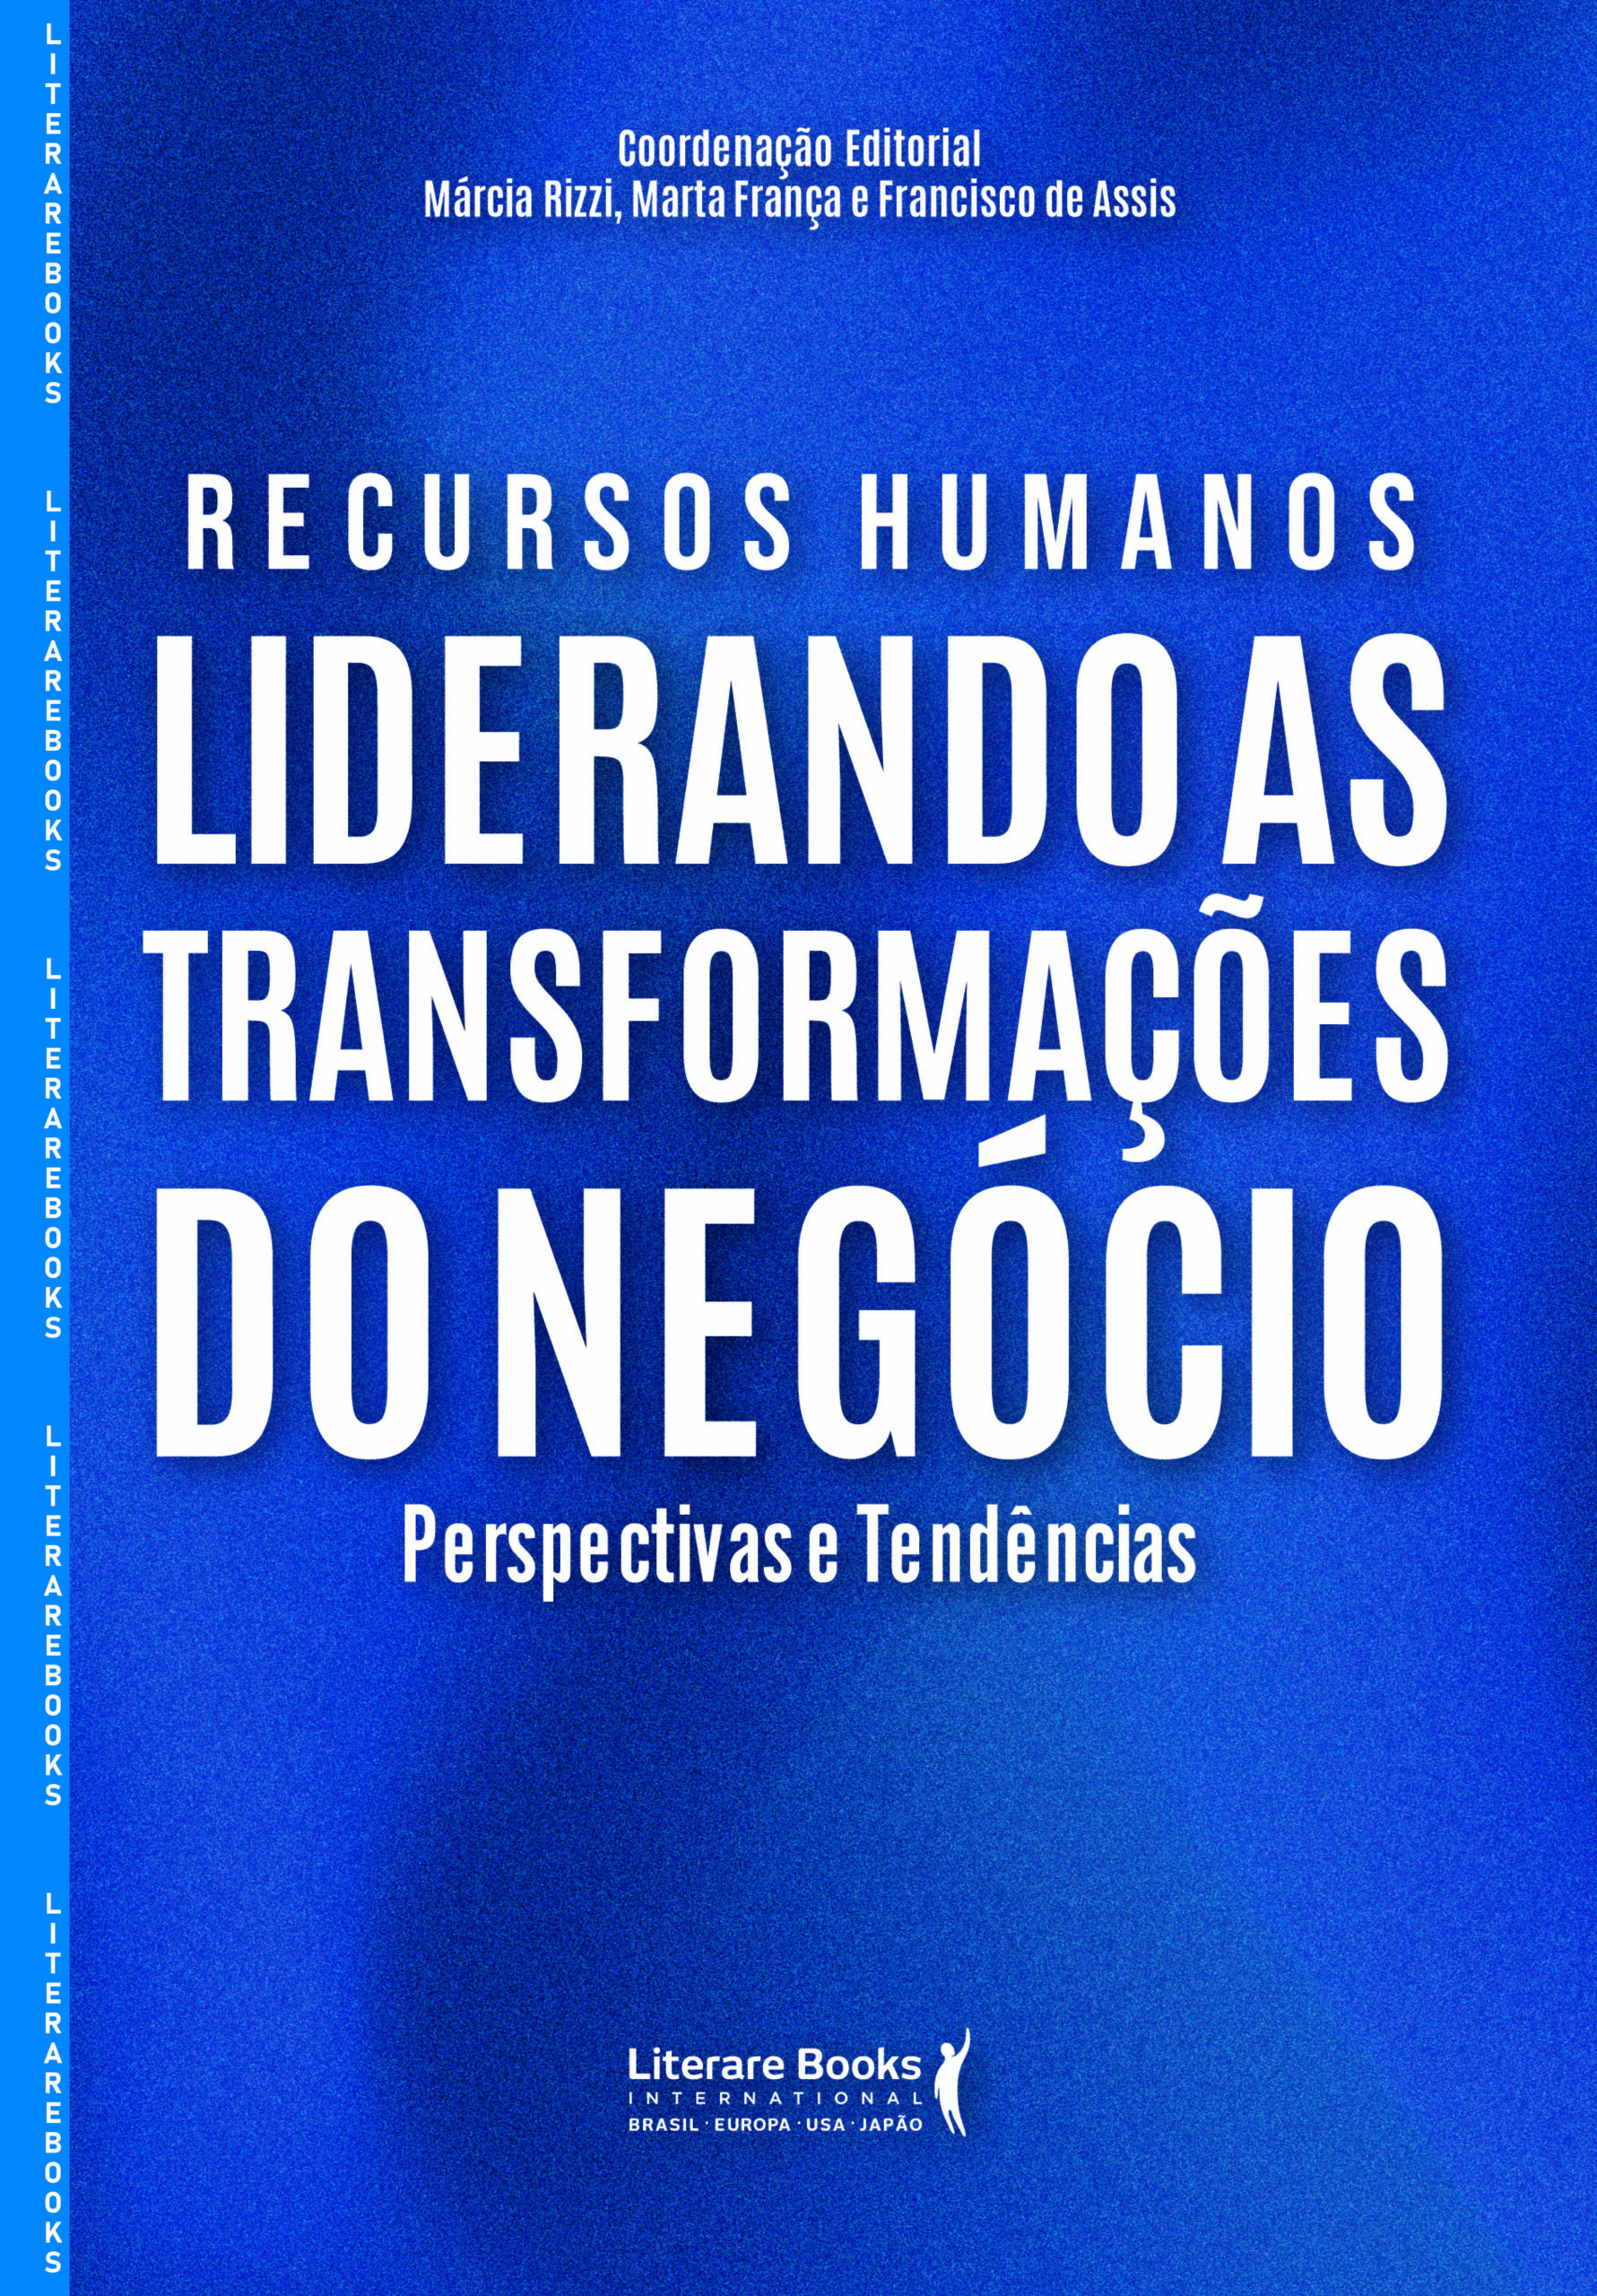 Novo livro desafia a gestão tradicional de RH e inspira a transformação organizacional